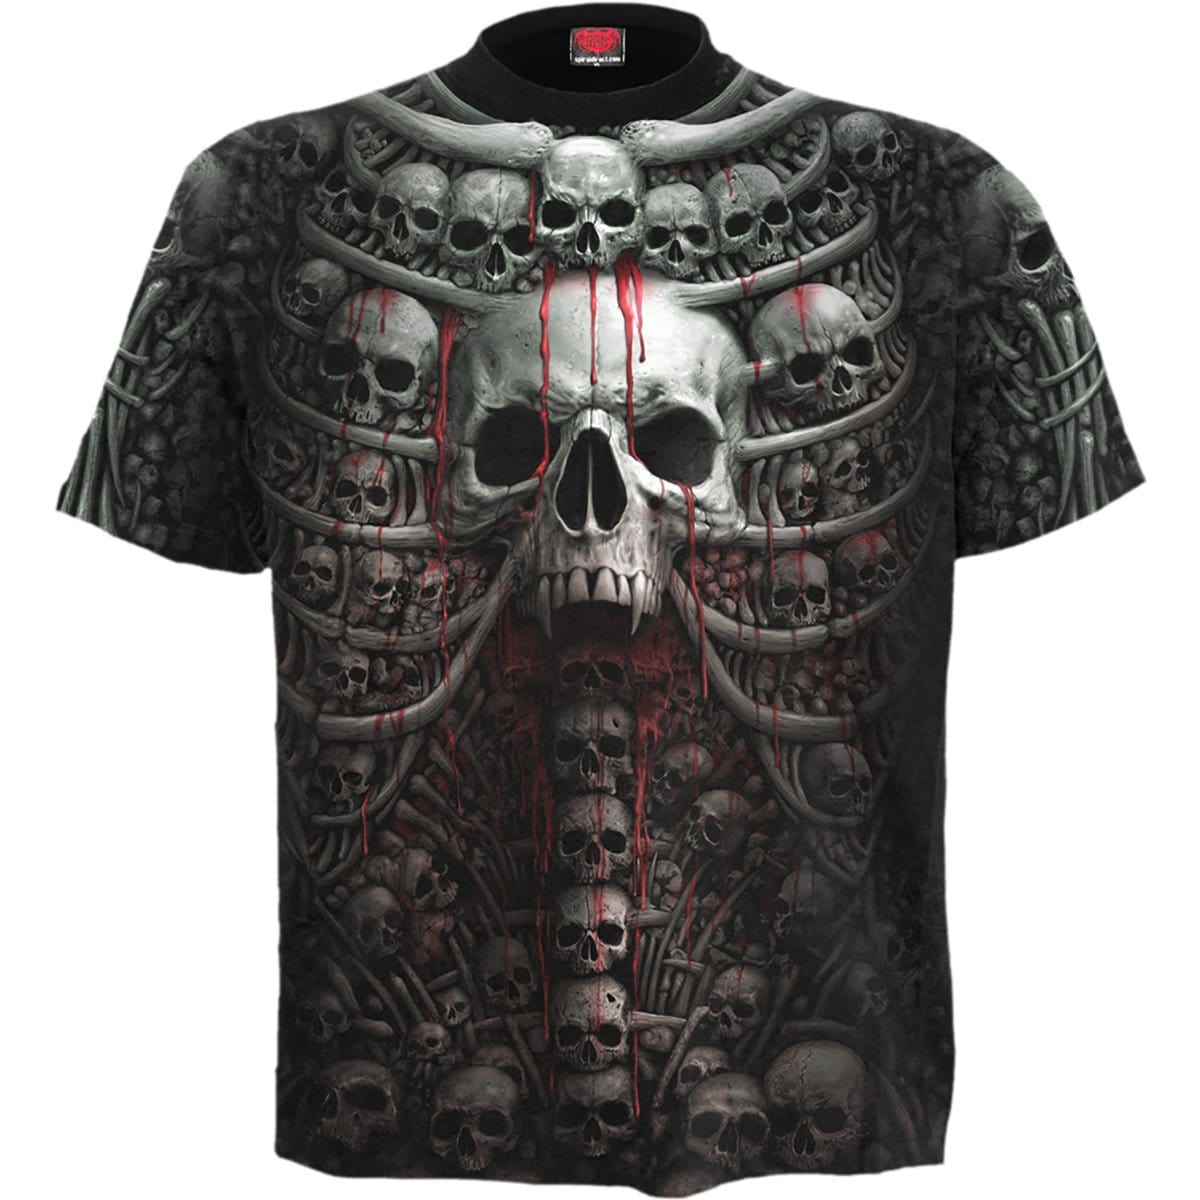 DEATH RIBS - Allover T-Shirt Black - Spiral USA